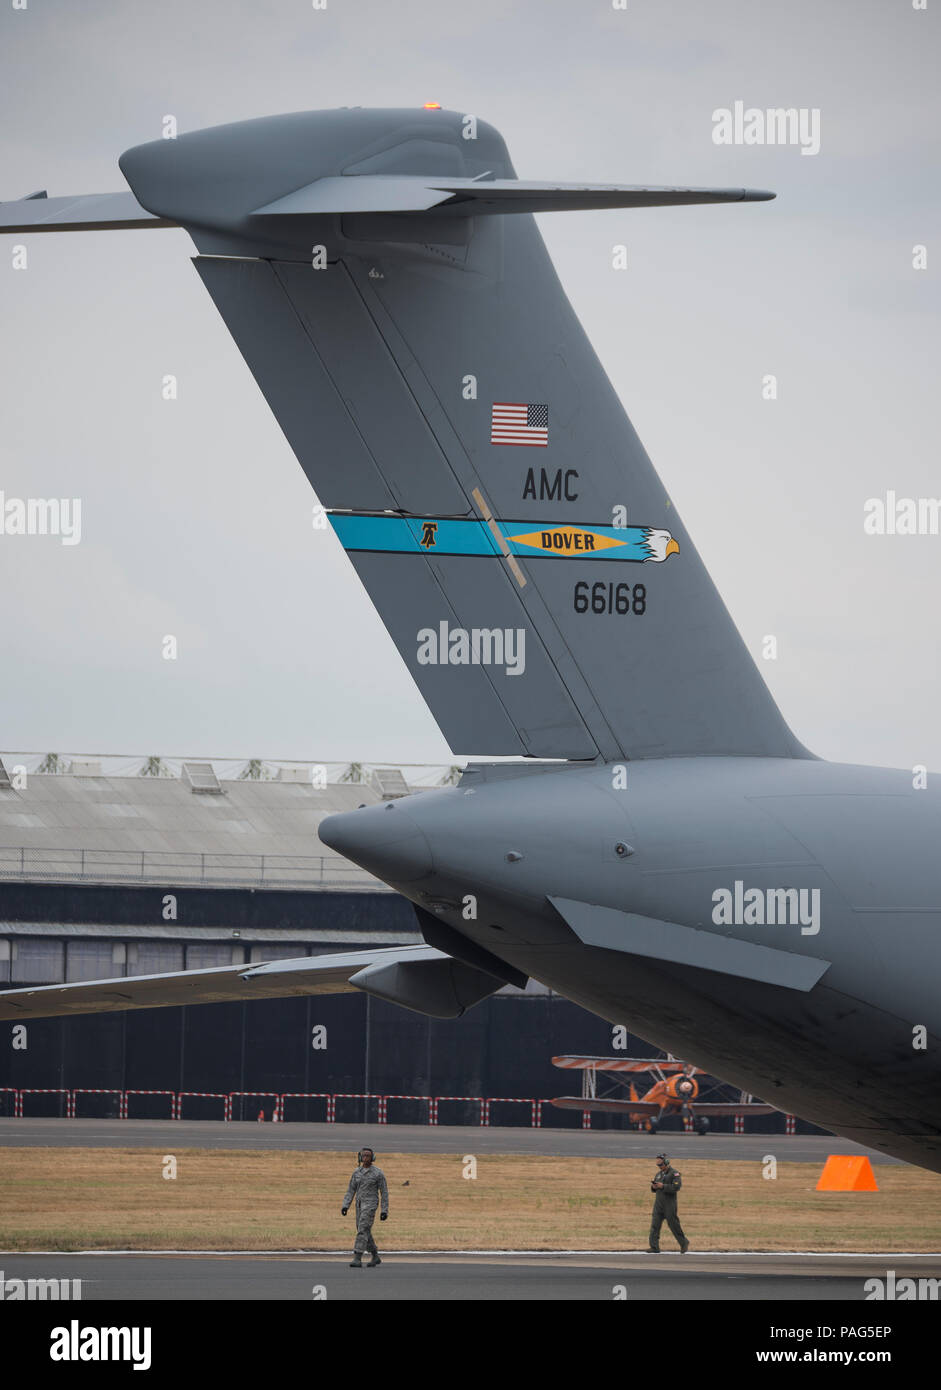 Boeing C-17 Globemaster III militärische Transportflugzeuge der US Air Force kommt in Farnborough Airshow 2018 für die Öffentlichkeit. Stockfoto